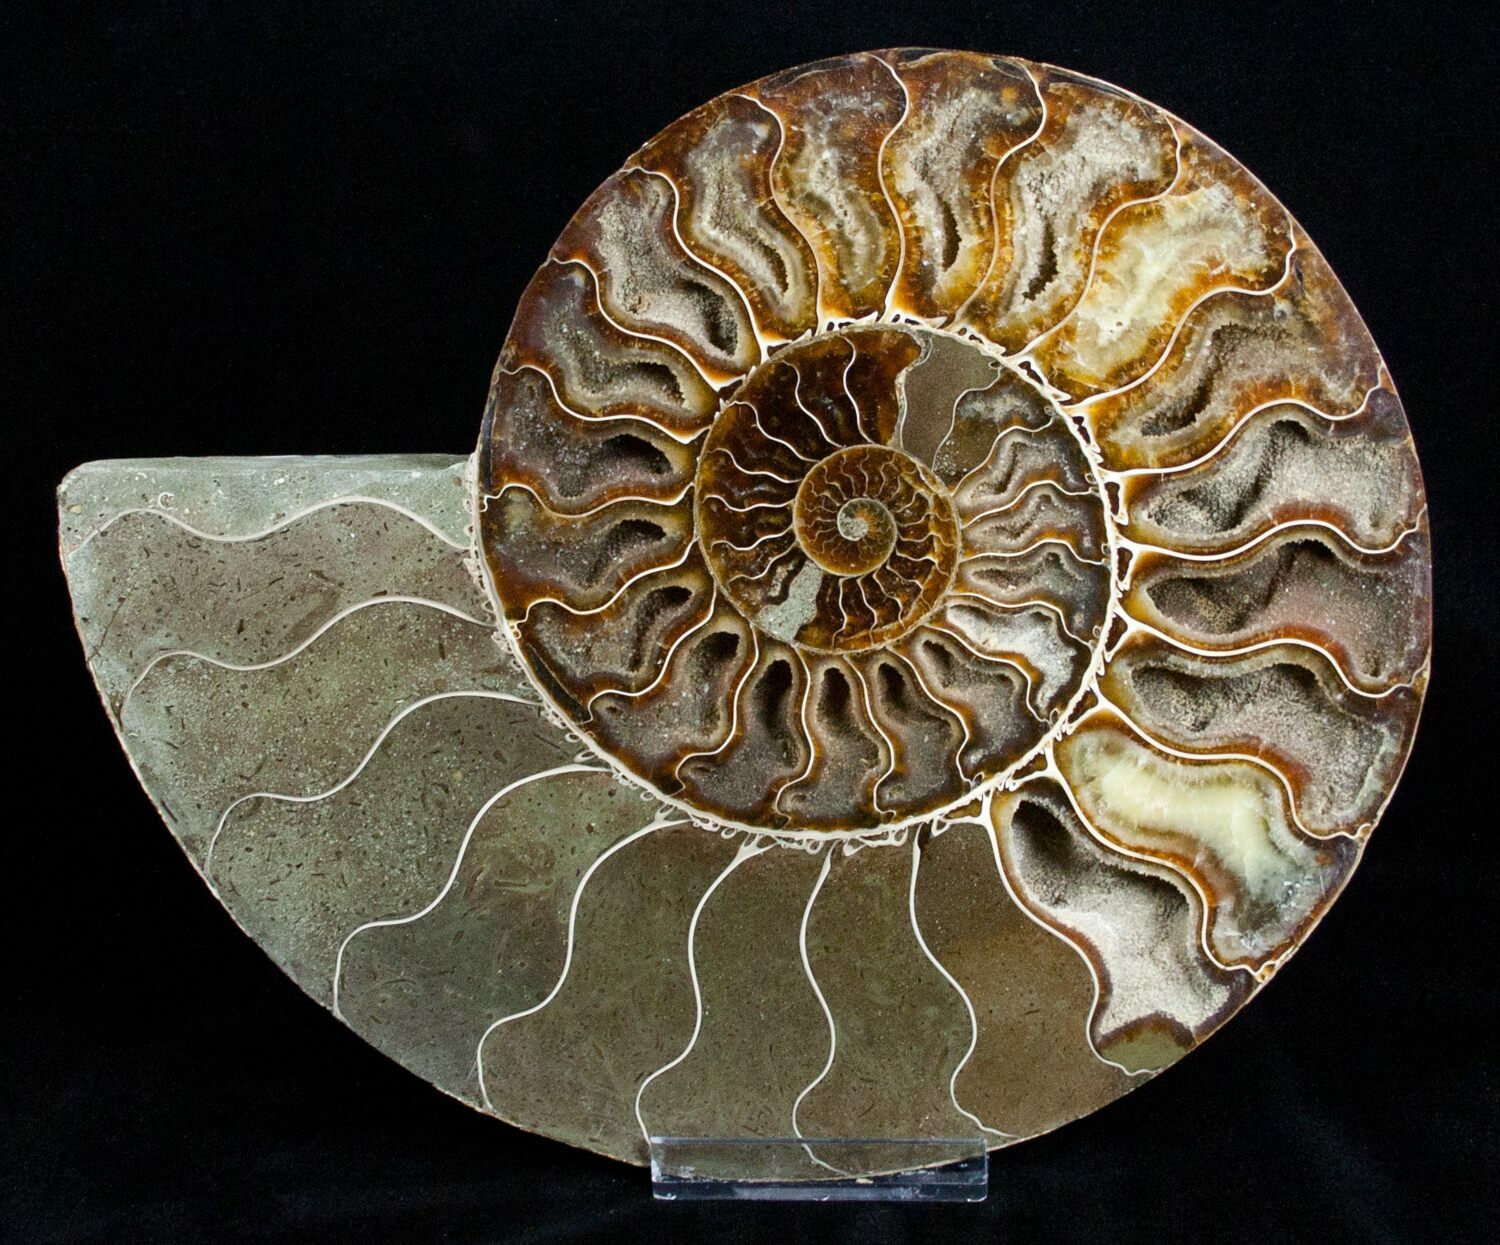 giant ammonite